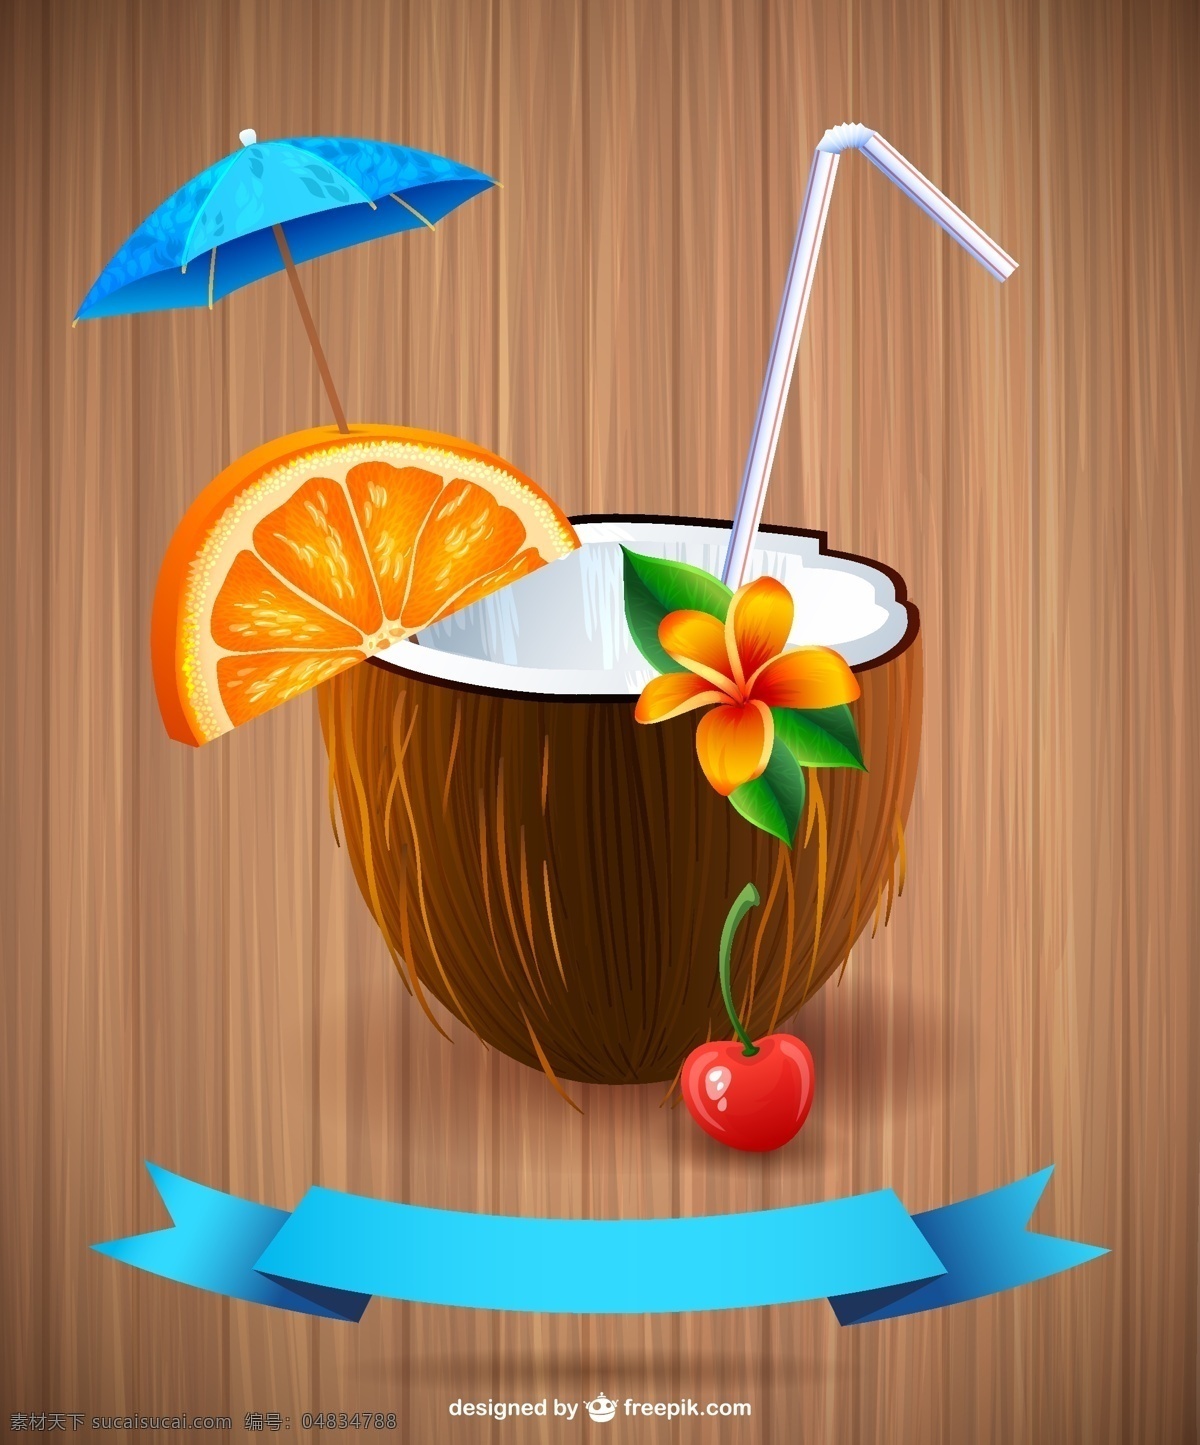 精美 椰子汁 背景 矢量 椰子汁背景 橙子 鸡蛋花 吸管 装饰伞 热带饮品 沙滩 樱桃 木纹